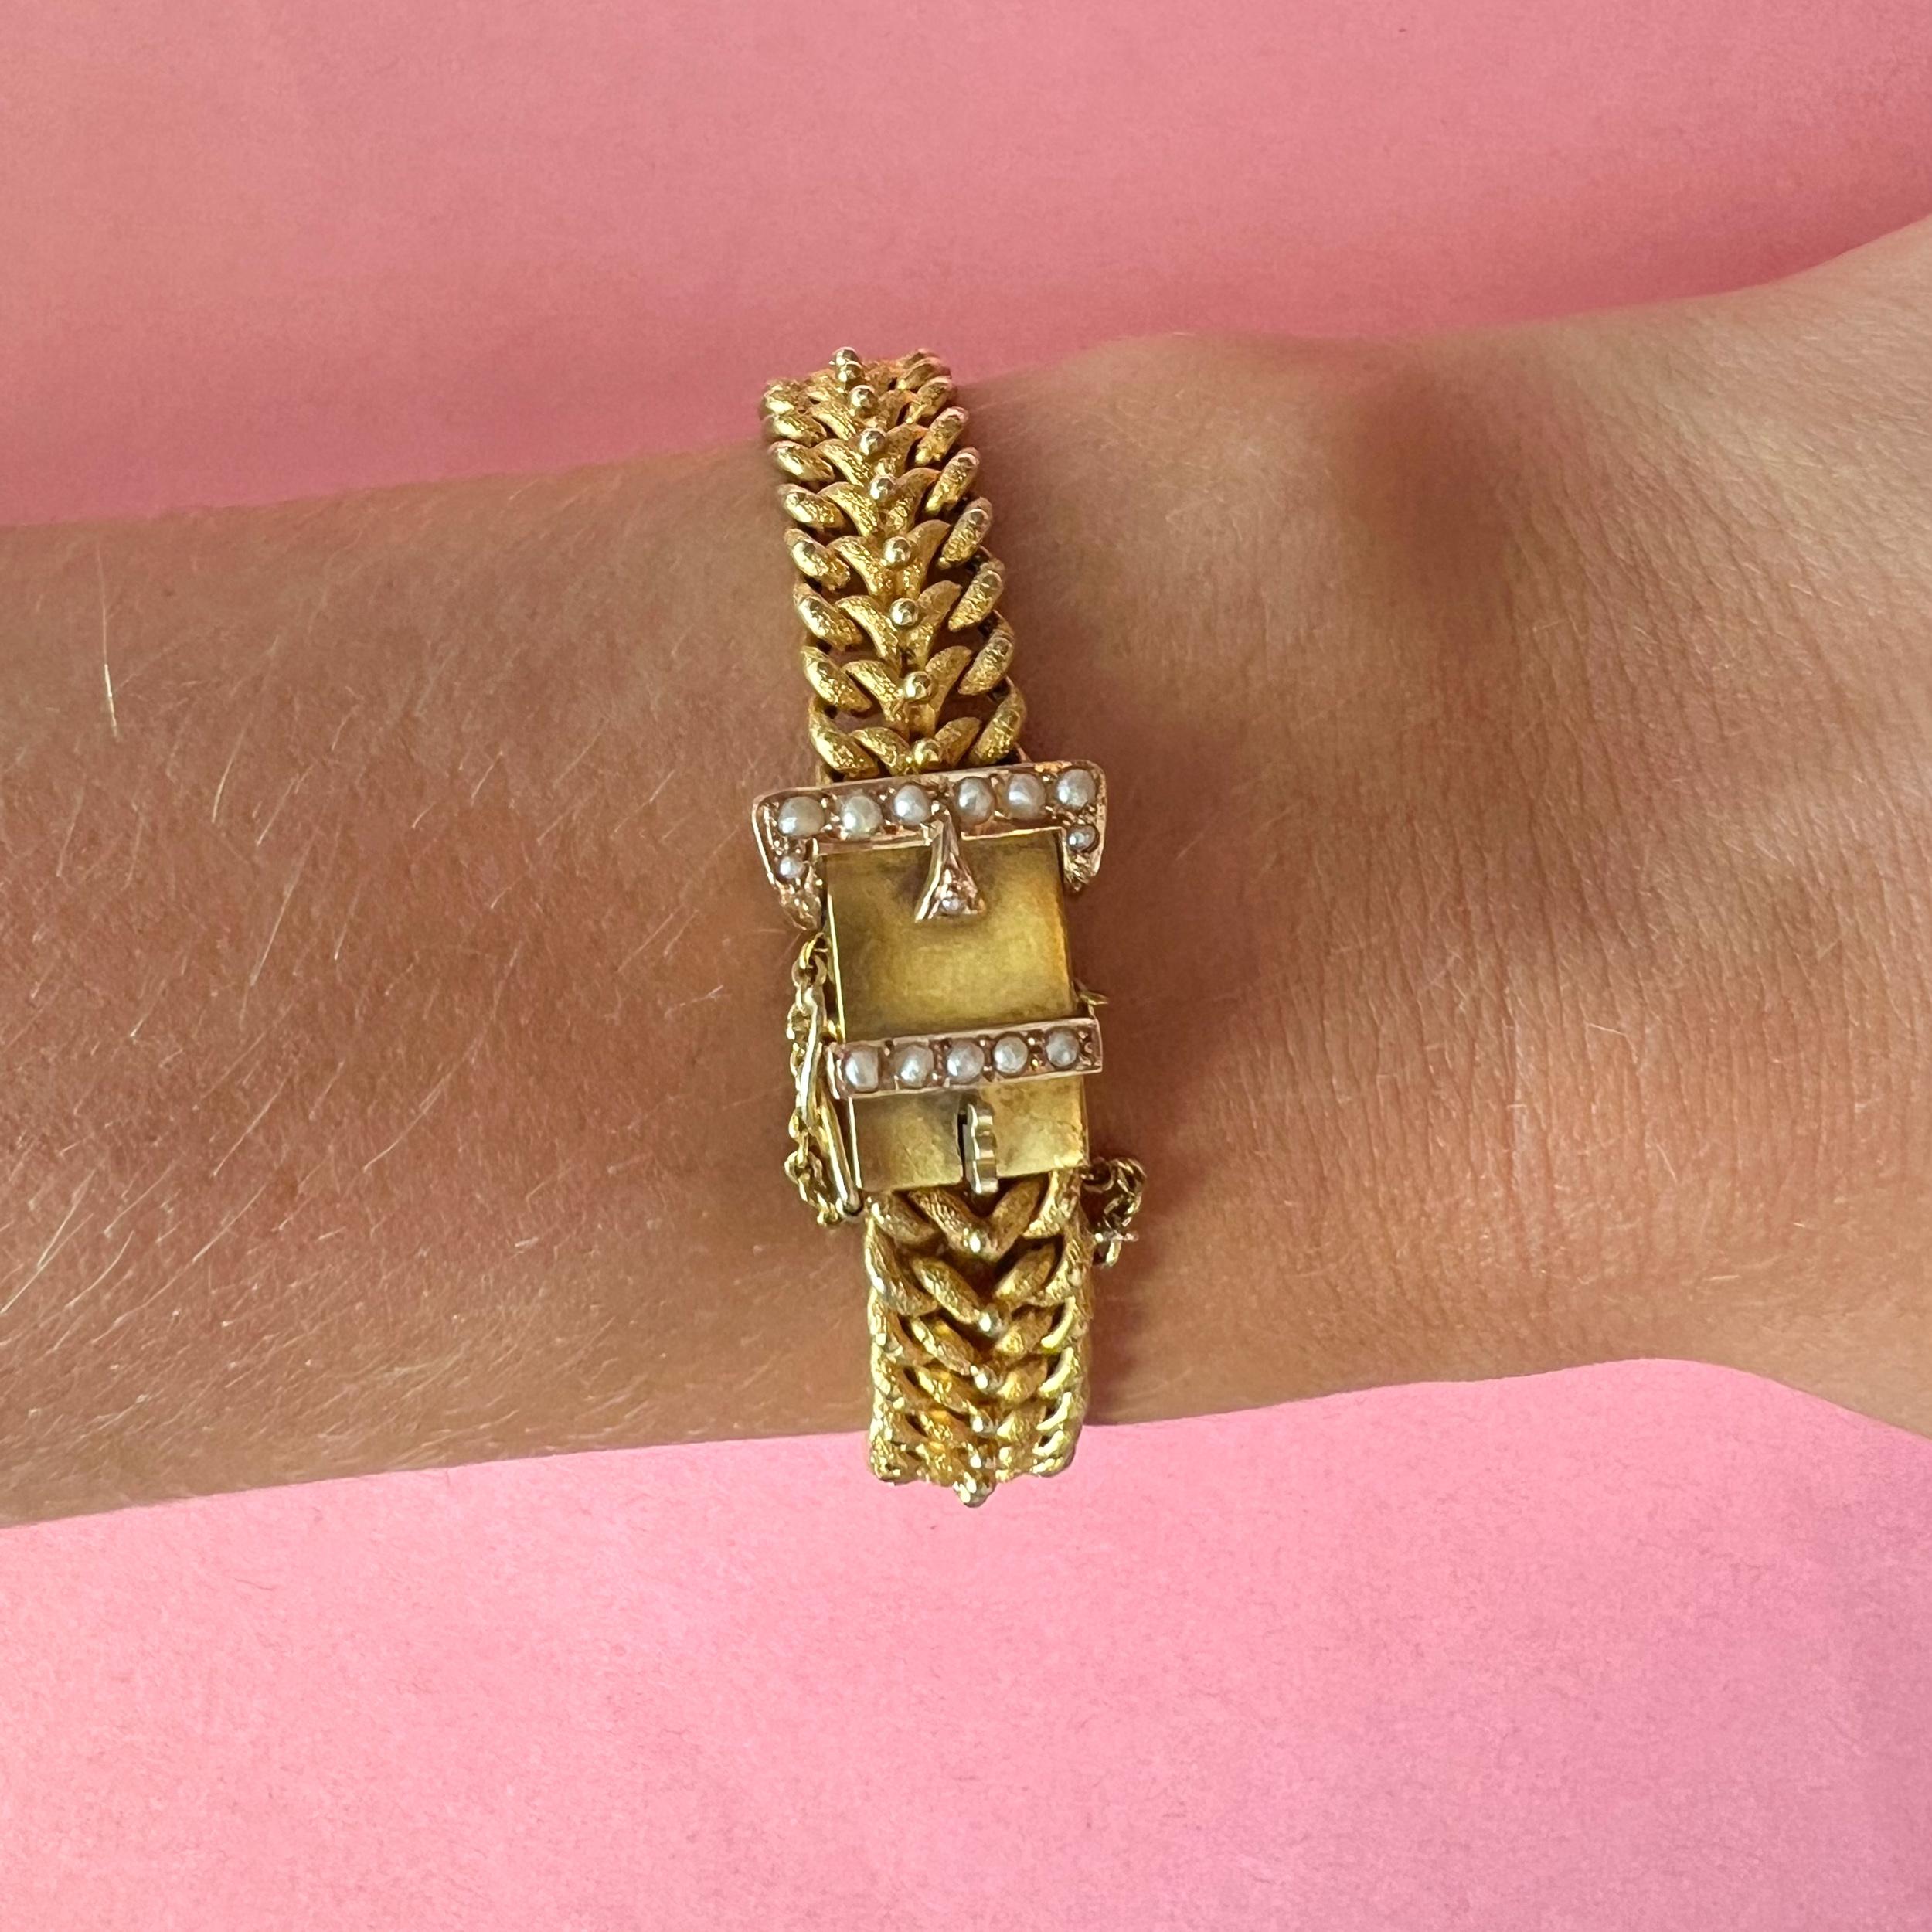 Dies ist eine antike spätviktorianische 1890er Jahre Gold satiniert Kette Armband mit Saatgut Perlen gesetzt. Dieses schöne Schnallenarmband ist aus 14-karätigem Gold mit einer matten, satinierten Oberfläche auf den Ketten gefertigt. In der Mitte